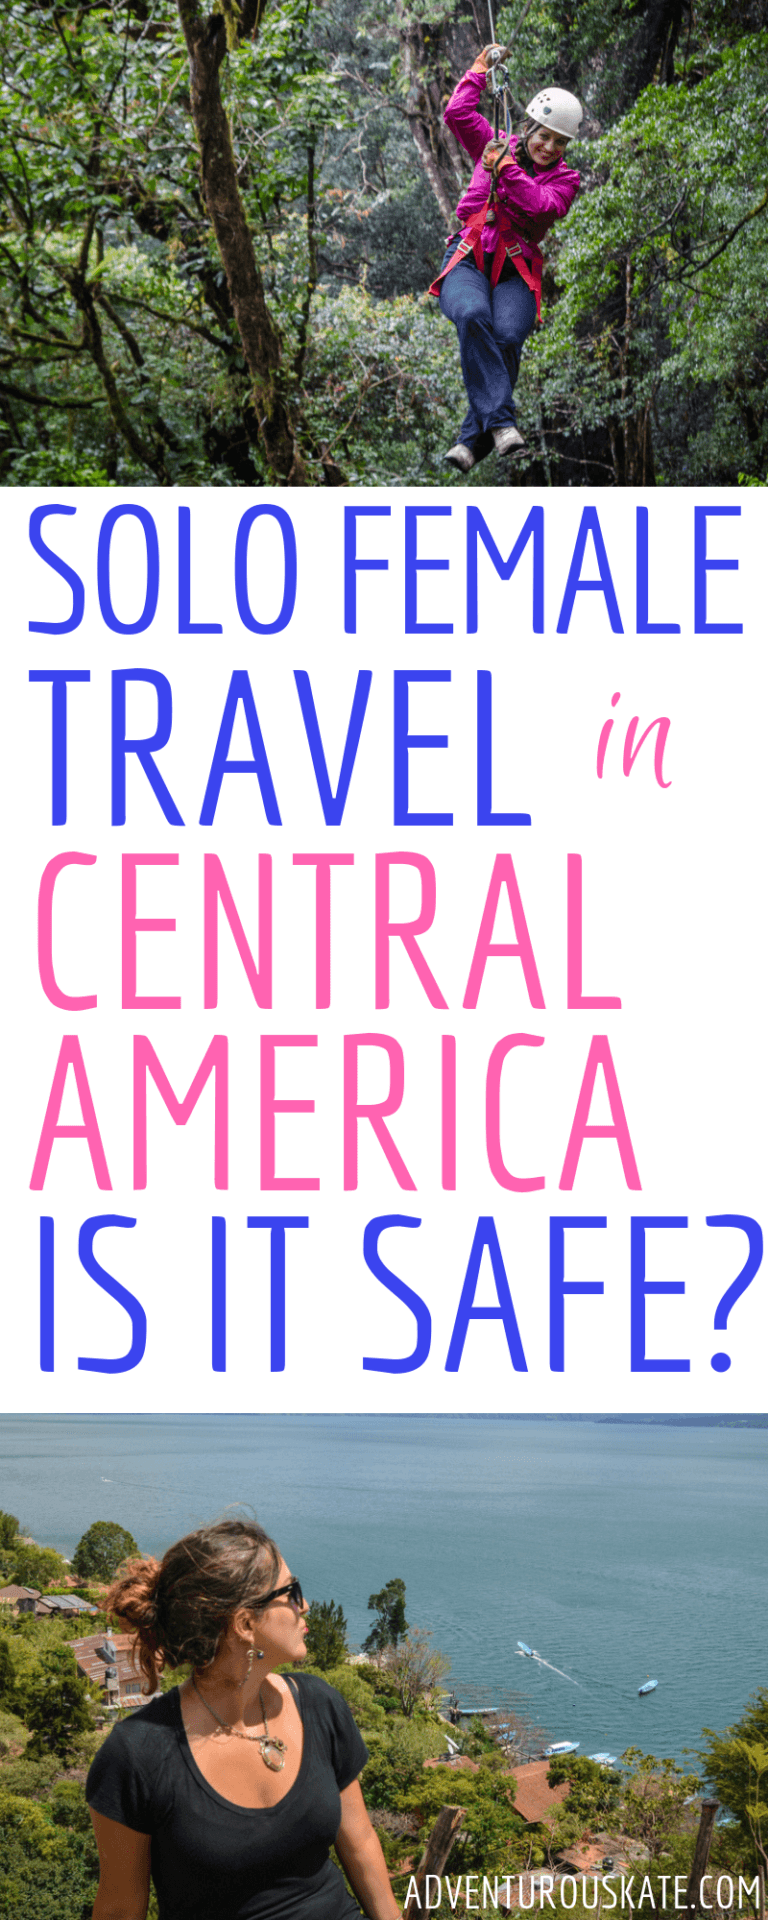 female solo travel central america